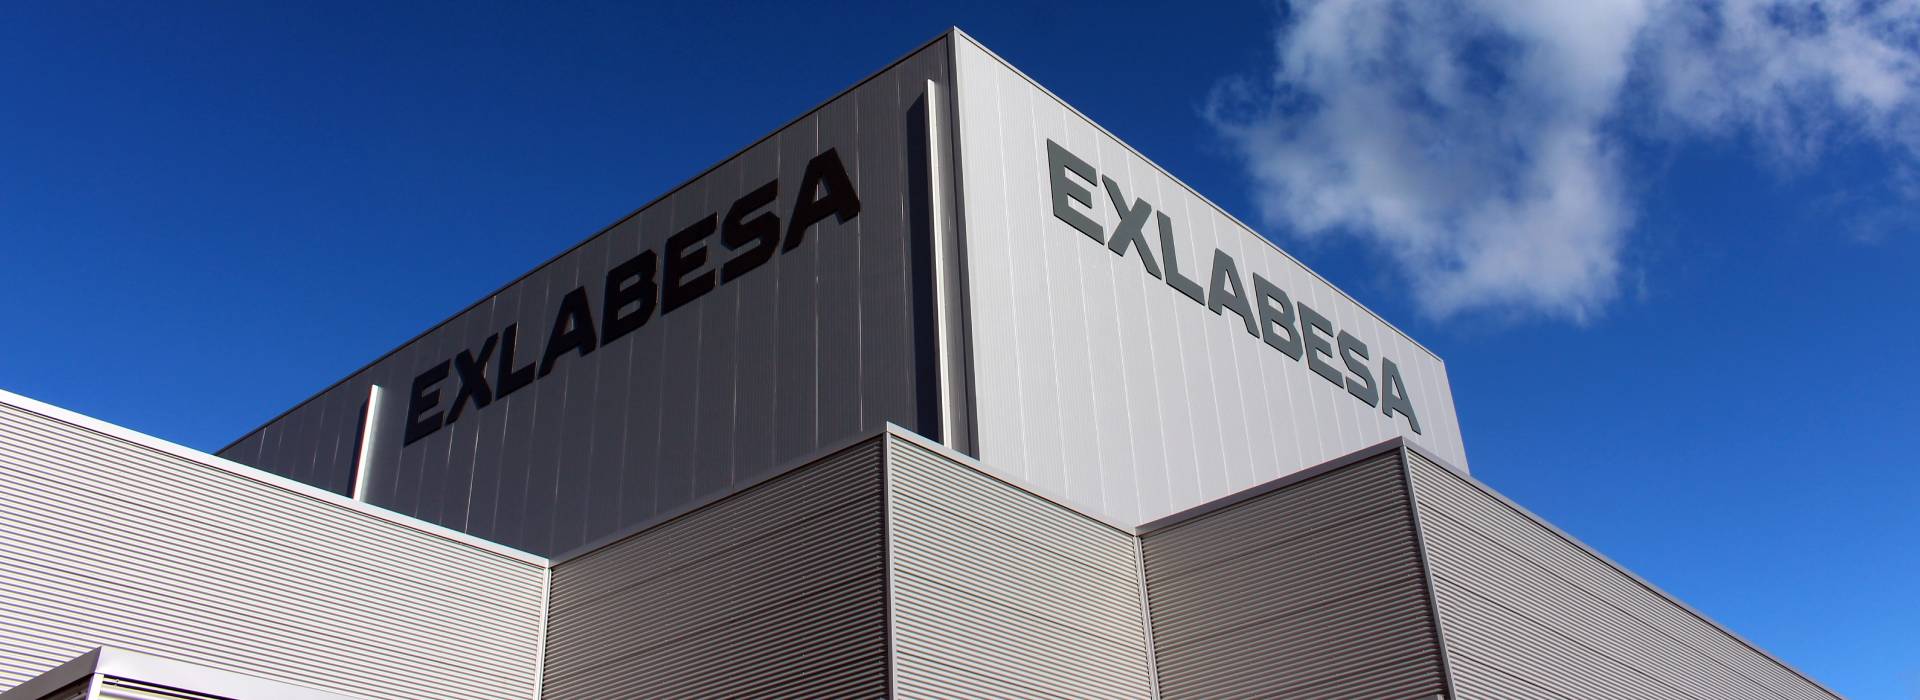 Exlabesa acquires Flandria Aluminium